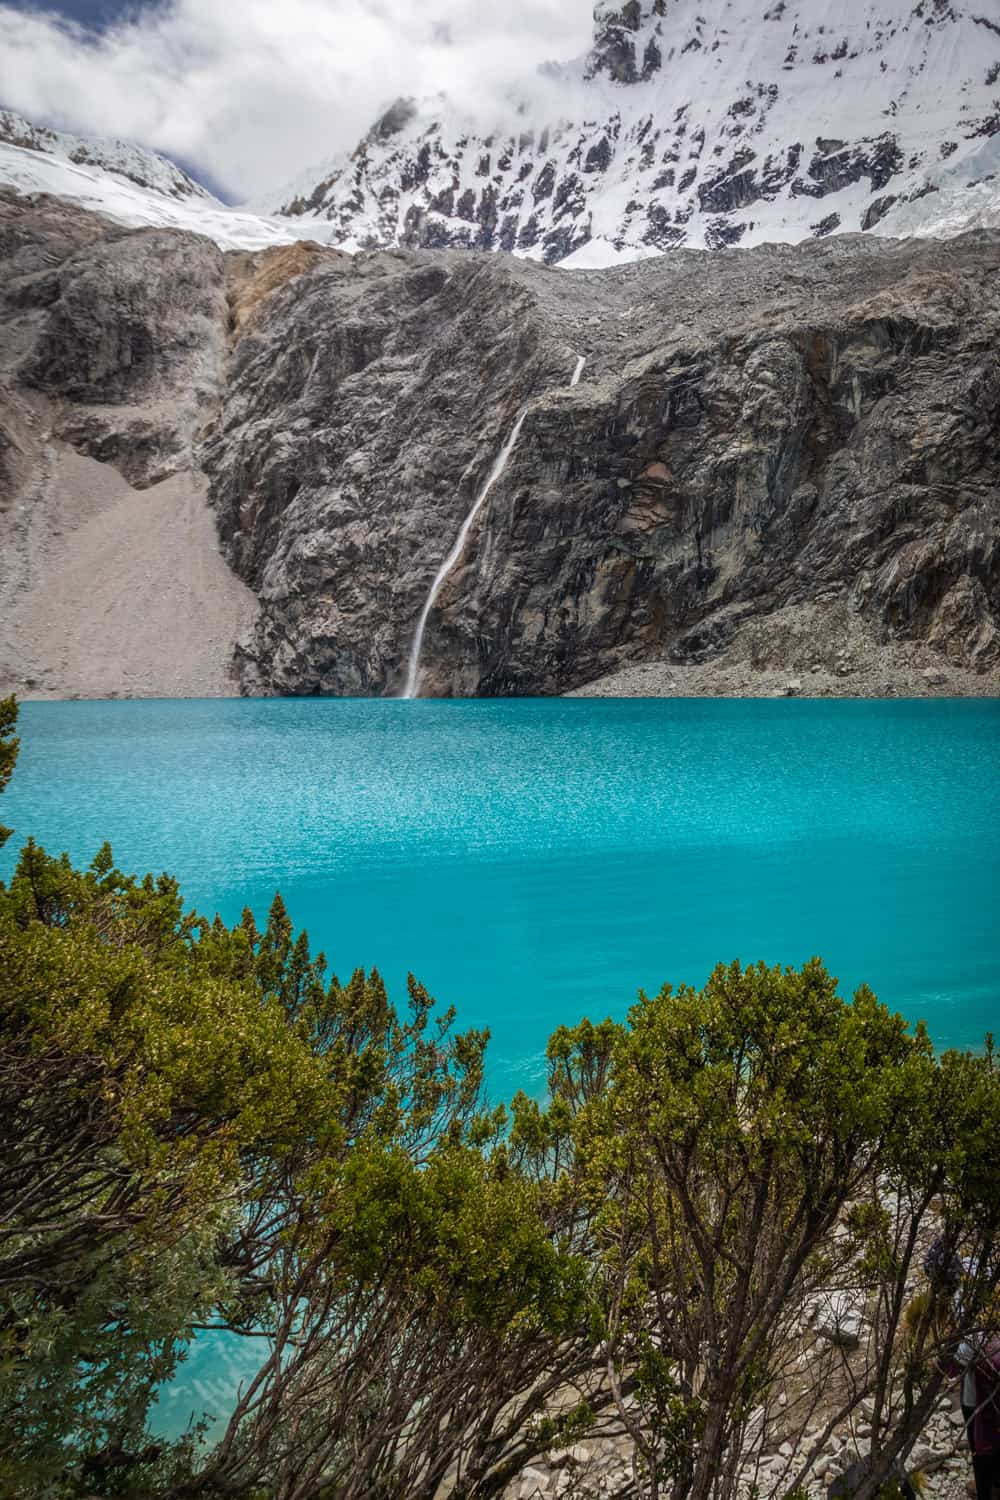 Blauw meer met besneeuwde bergen erachter en groene bosjes ervoor: Laguna 69 in Peru